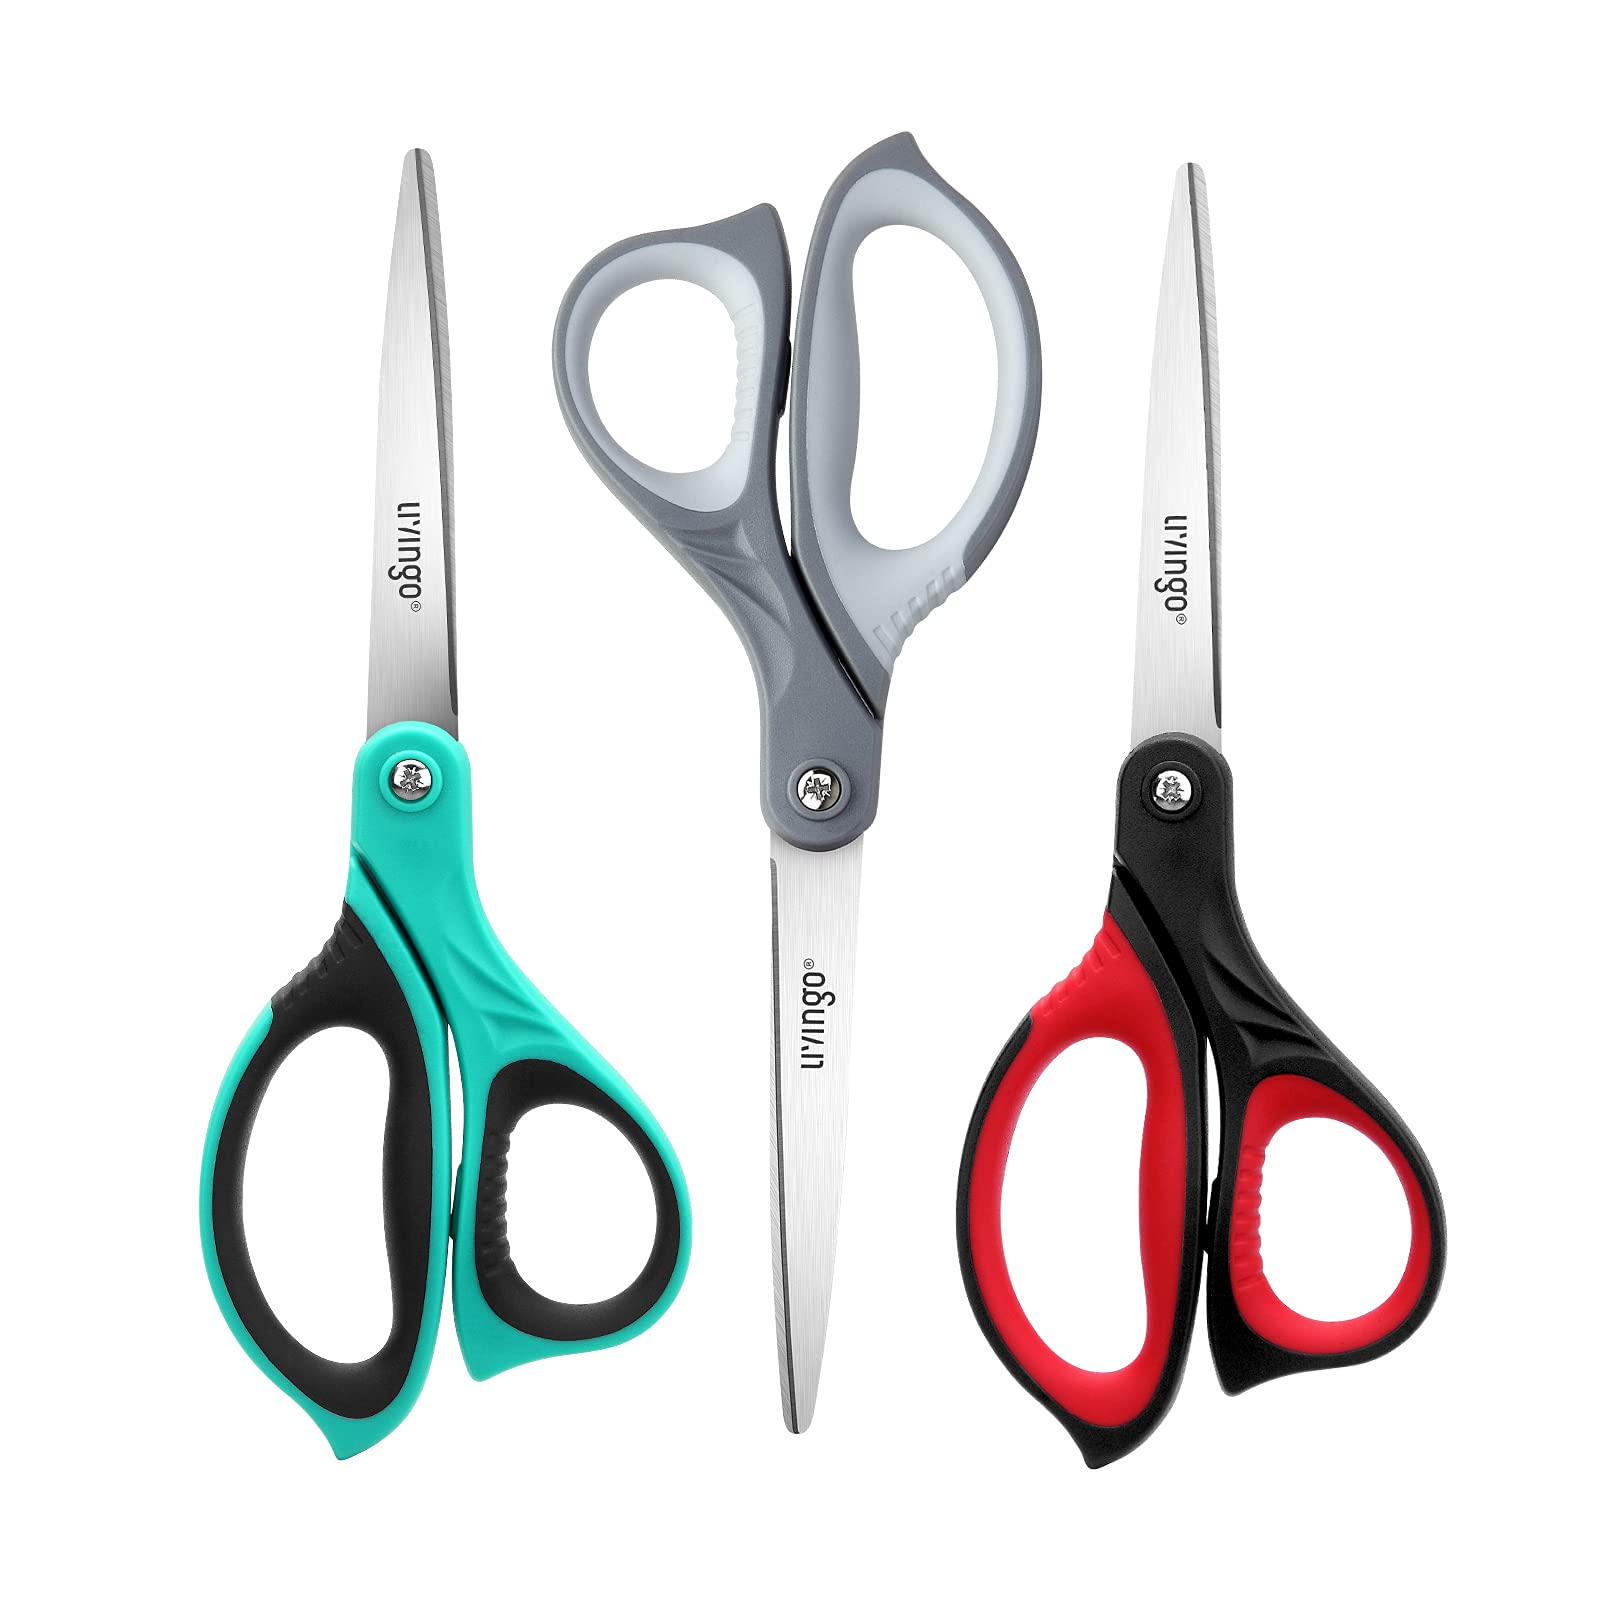 Multipurpose Scissors, Right/Left Handed Scissors, Ultra Sharp Blade Shears, Comfort-Grip Handles, Sturdy Sharp Stainless Steel Scissors for Office